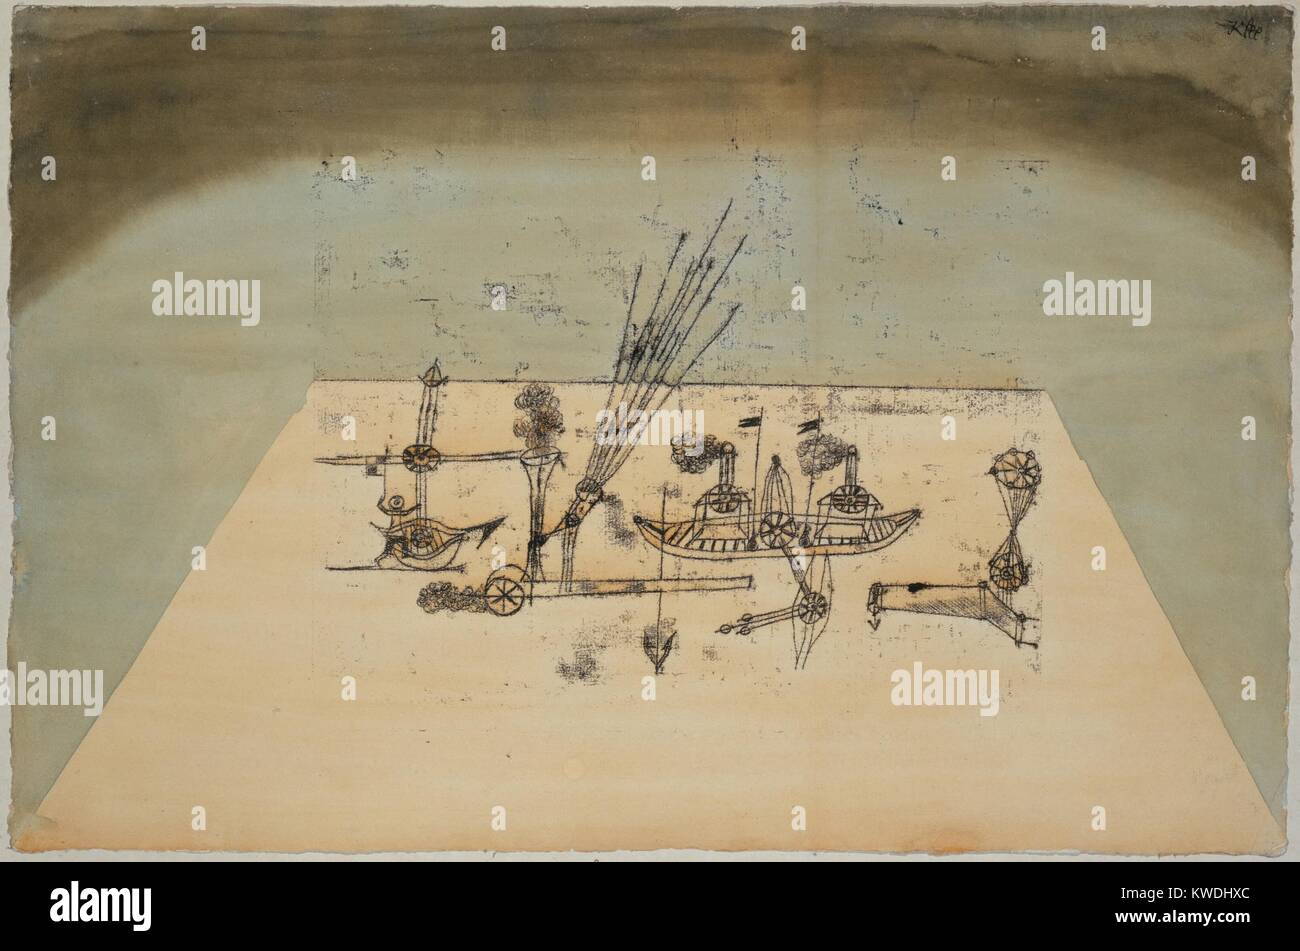 Gelbe Hafen, von Paul Klee, 1921, Schweizer Zeichnung, Aquarell und Tusche auf Papier. Eine Trapezform schlägt eine geradlinige Raum, in dem die verschiedenen Maschinen Raum und rülpsen Rauch besetzen. Es gibt zweibeinigen Abbildung links (BSLOC 2017 7 74) Stockfoto